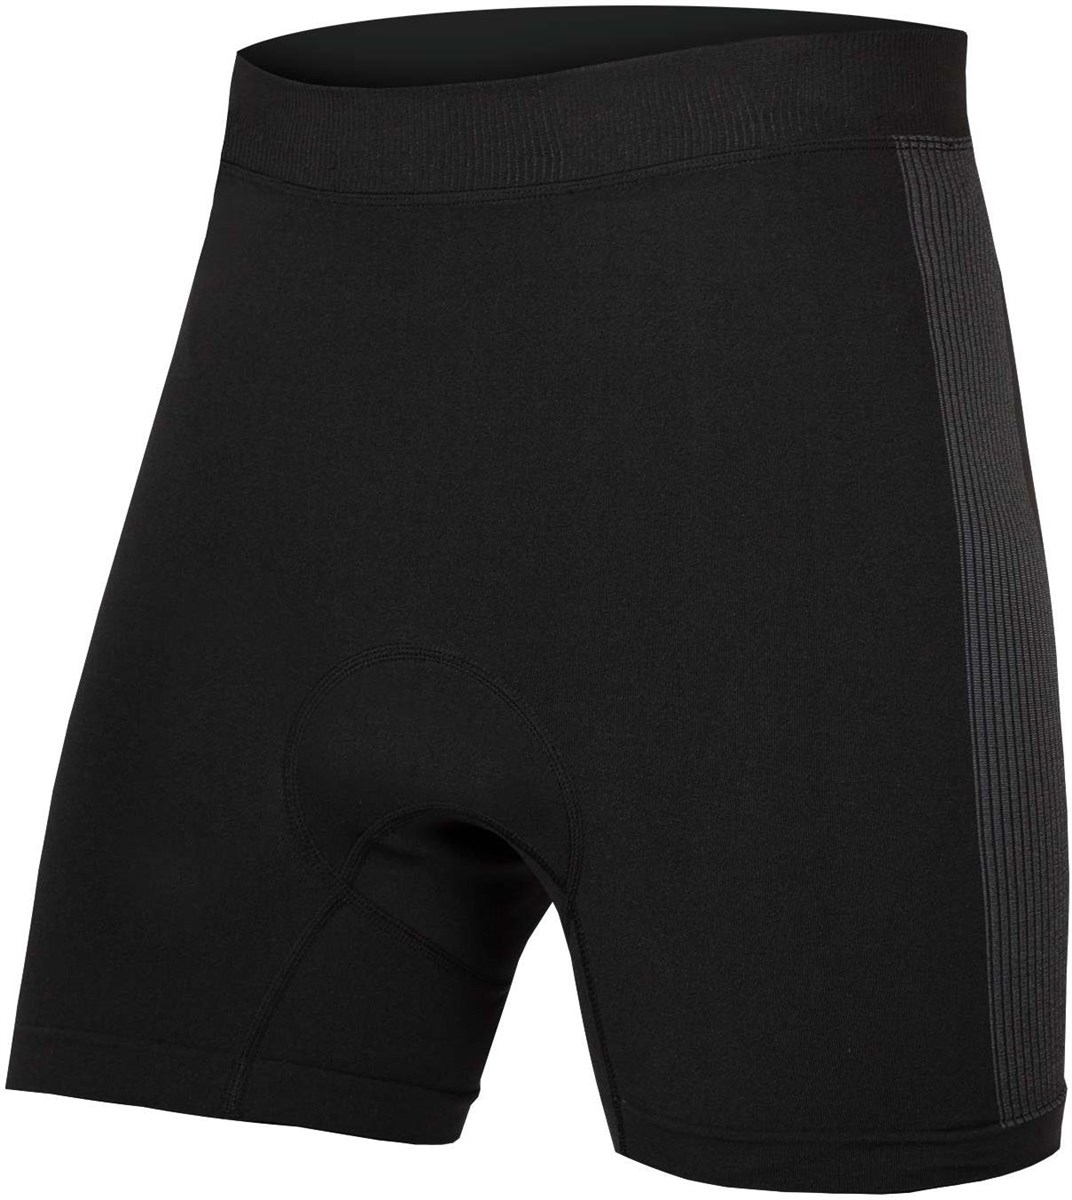 Endura Engineered Padded Boxer Shorts II product image